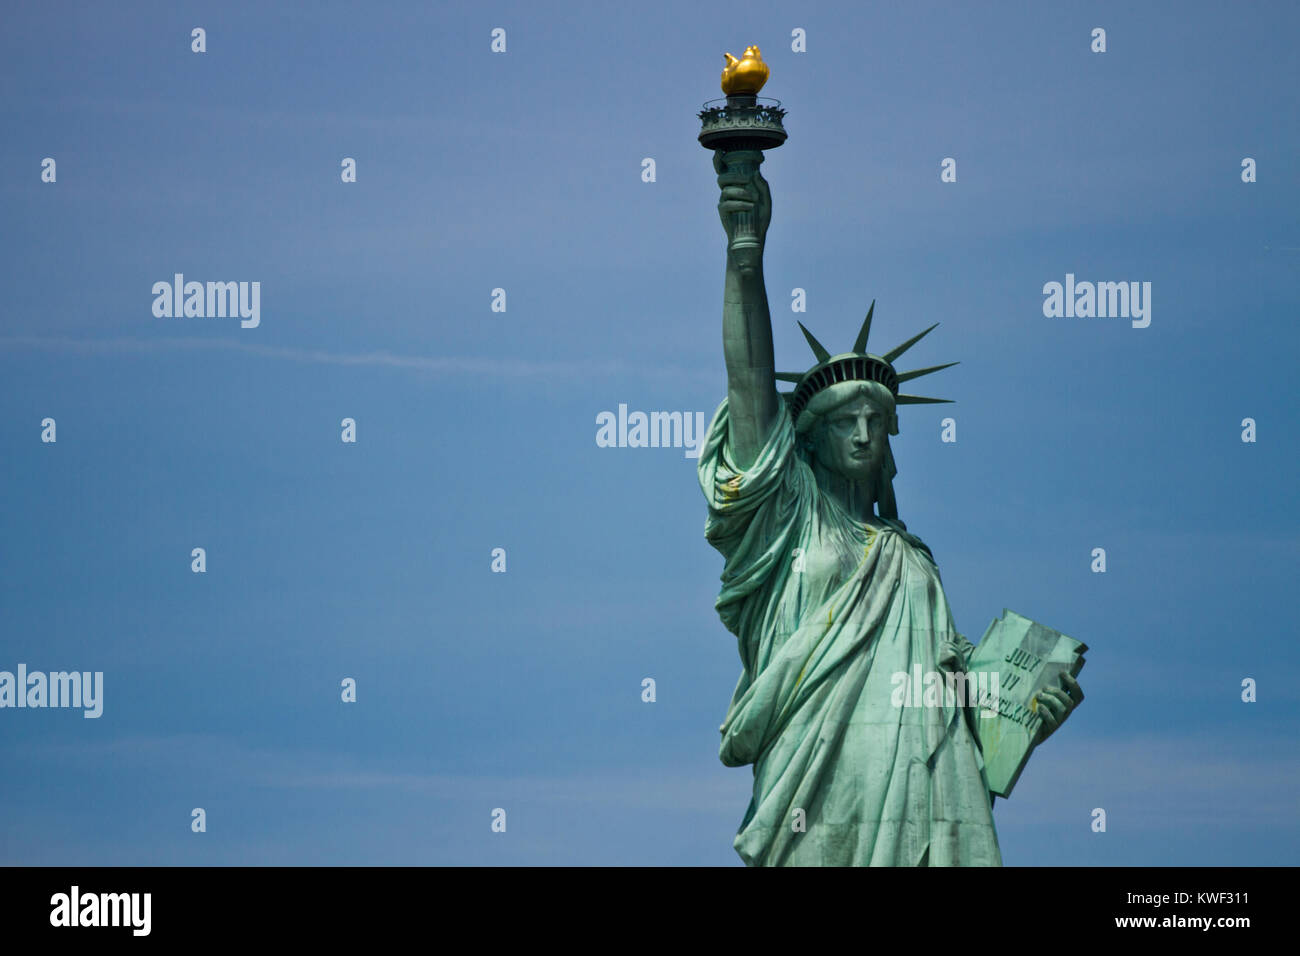 La Statue de la liberté est une colossale sculpture néoclassique sur Liberty Island dans le port de New York à New York, aux États-Unis. Banque D'Images